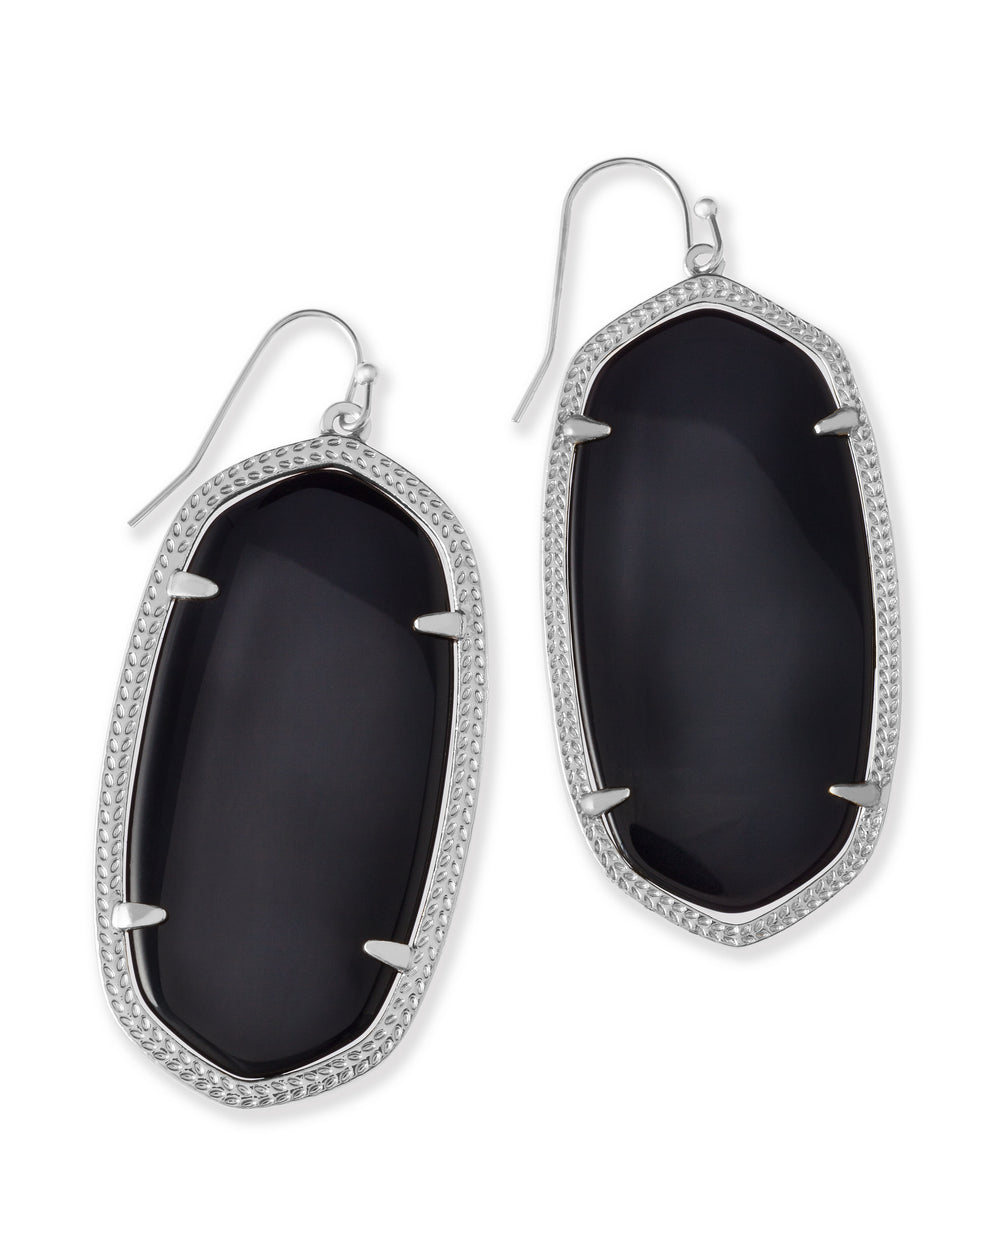 Danielle Silver Drop Earrings in Black Opaque Glass